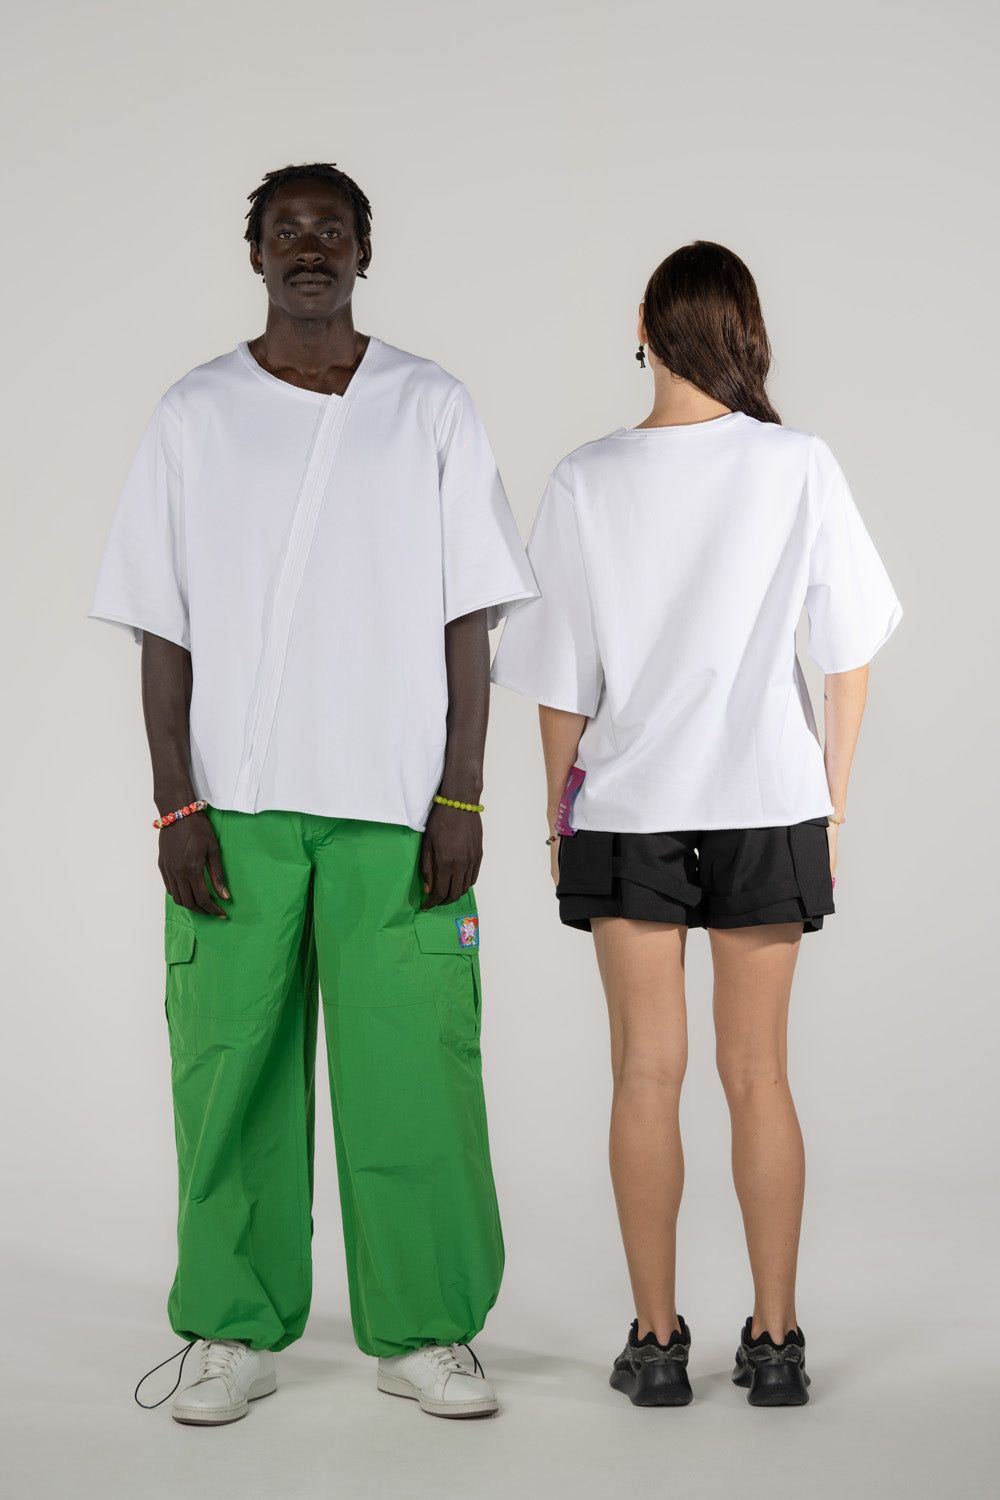 White Asymmetrical T-Shirt